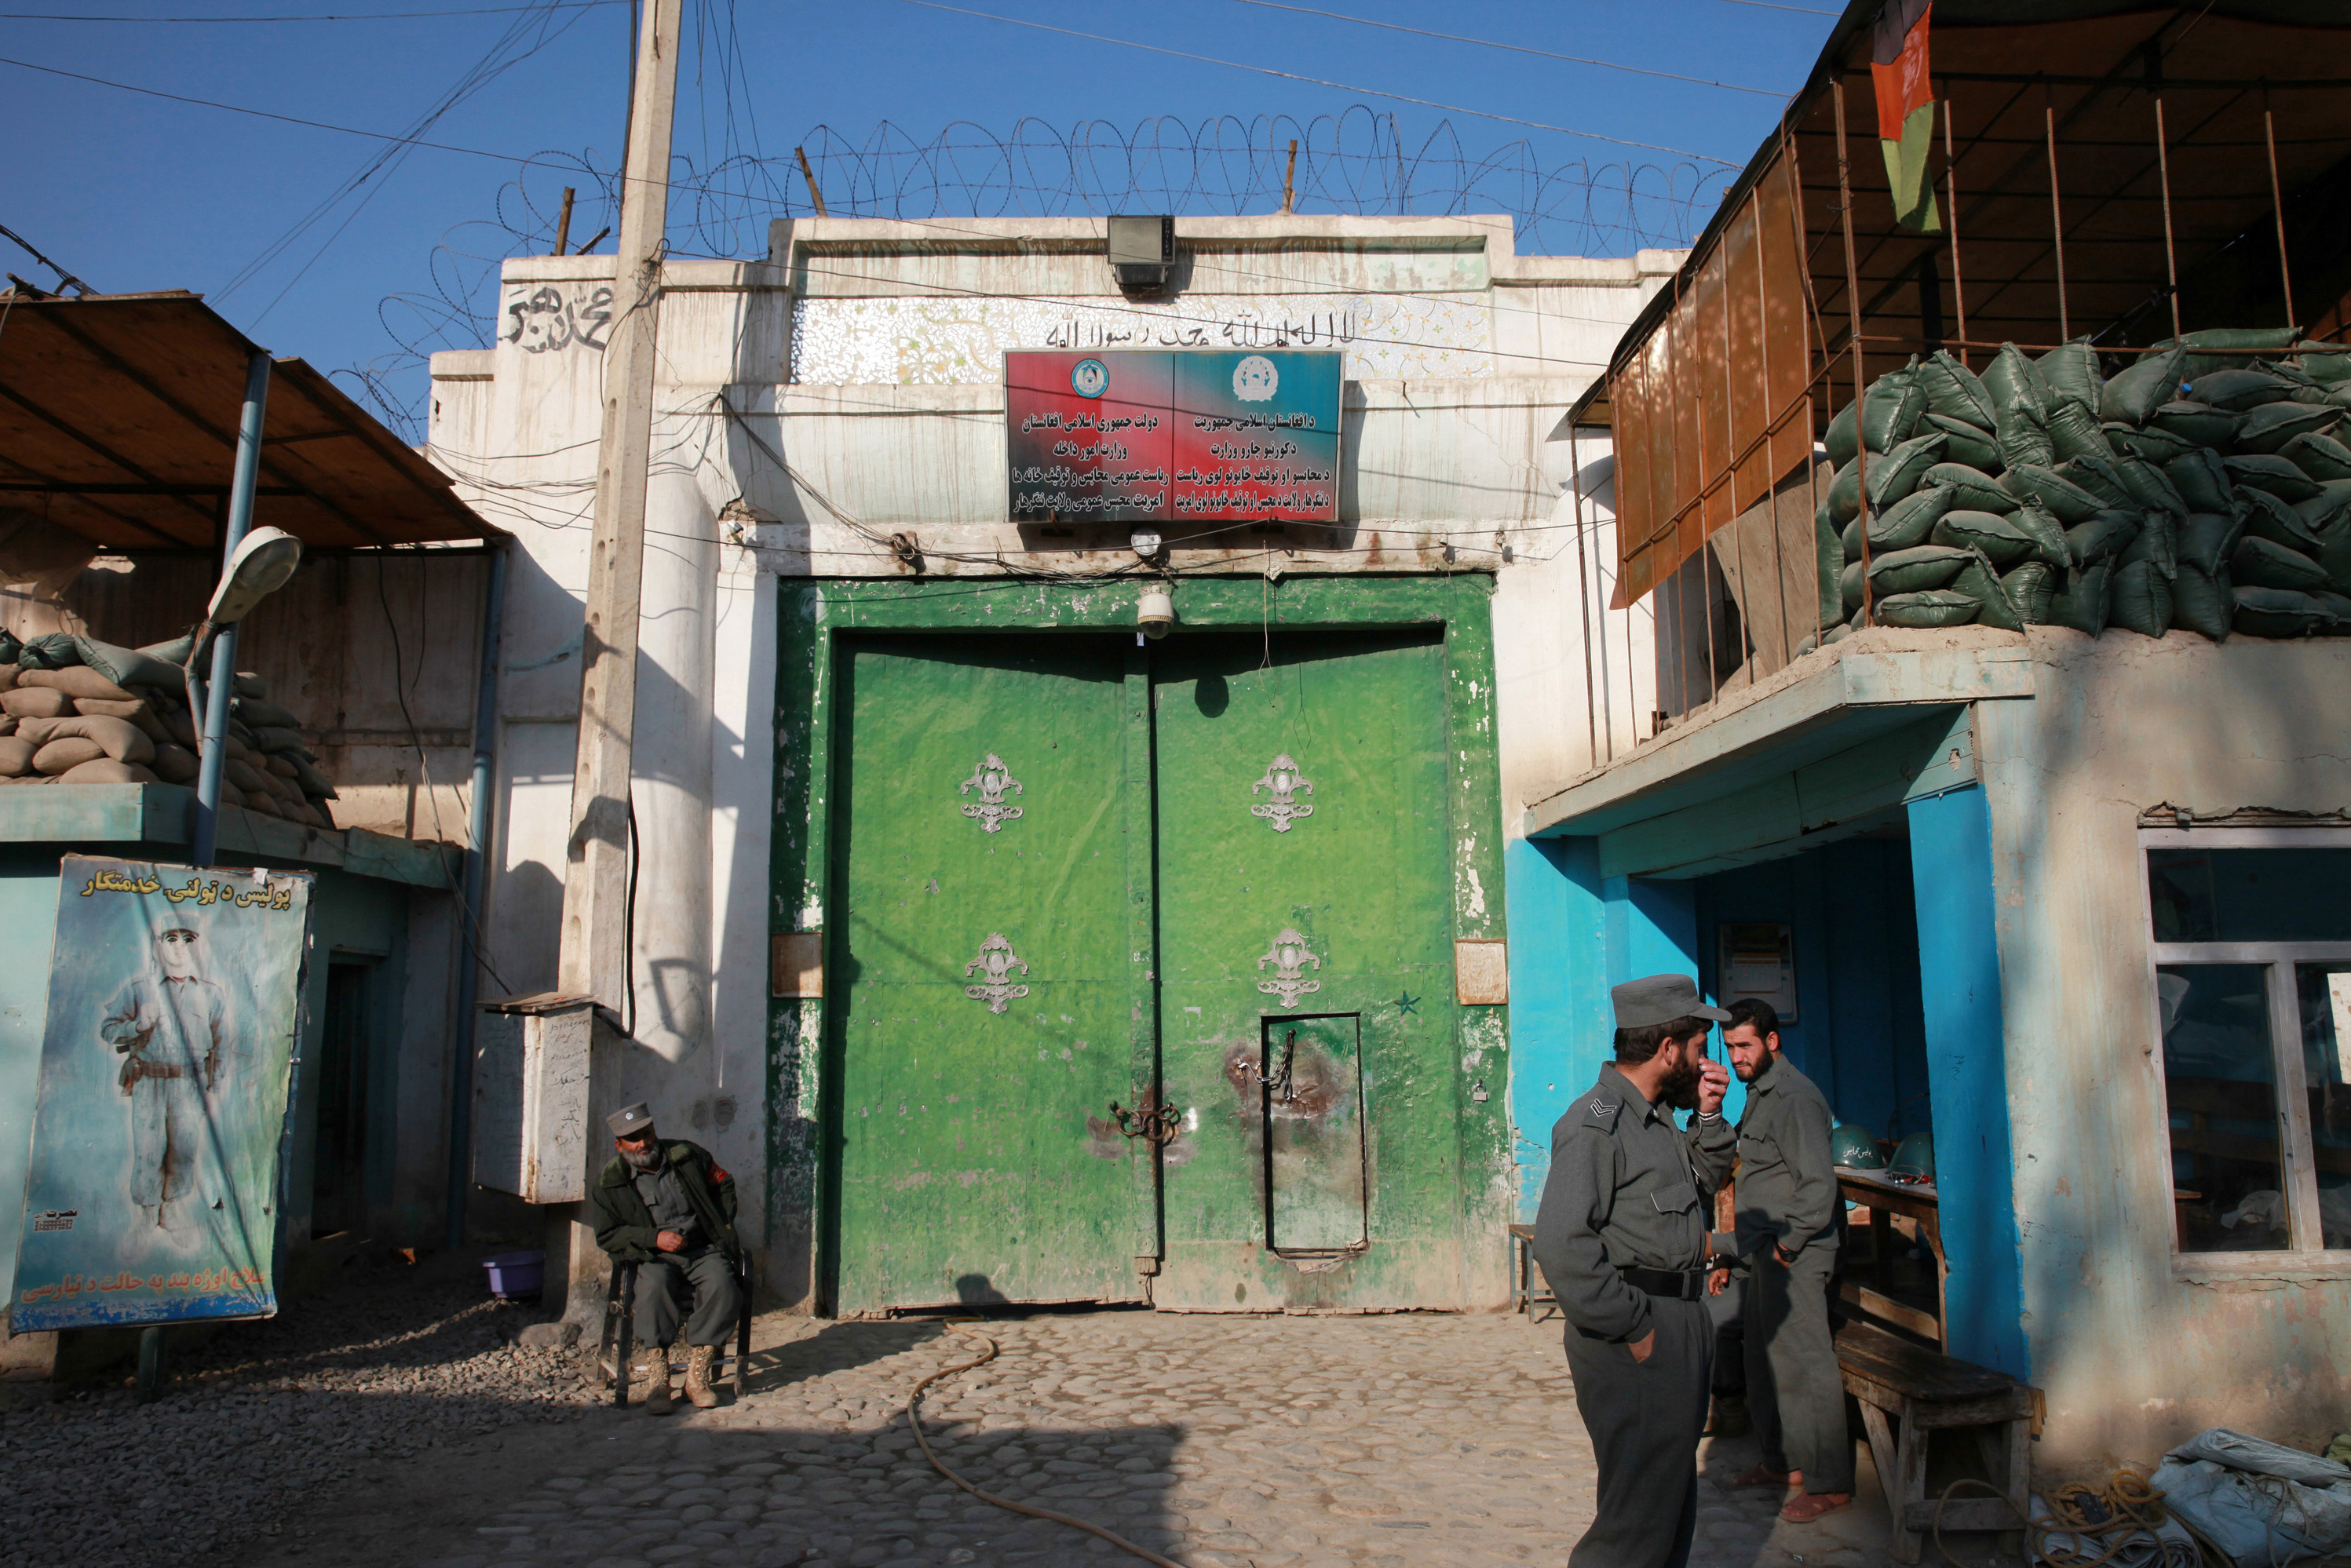 Men guard the gate of a women's prison in Afghanistan. GABRIELA MAJ/The Almond Garden